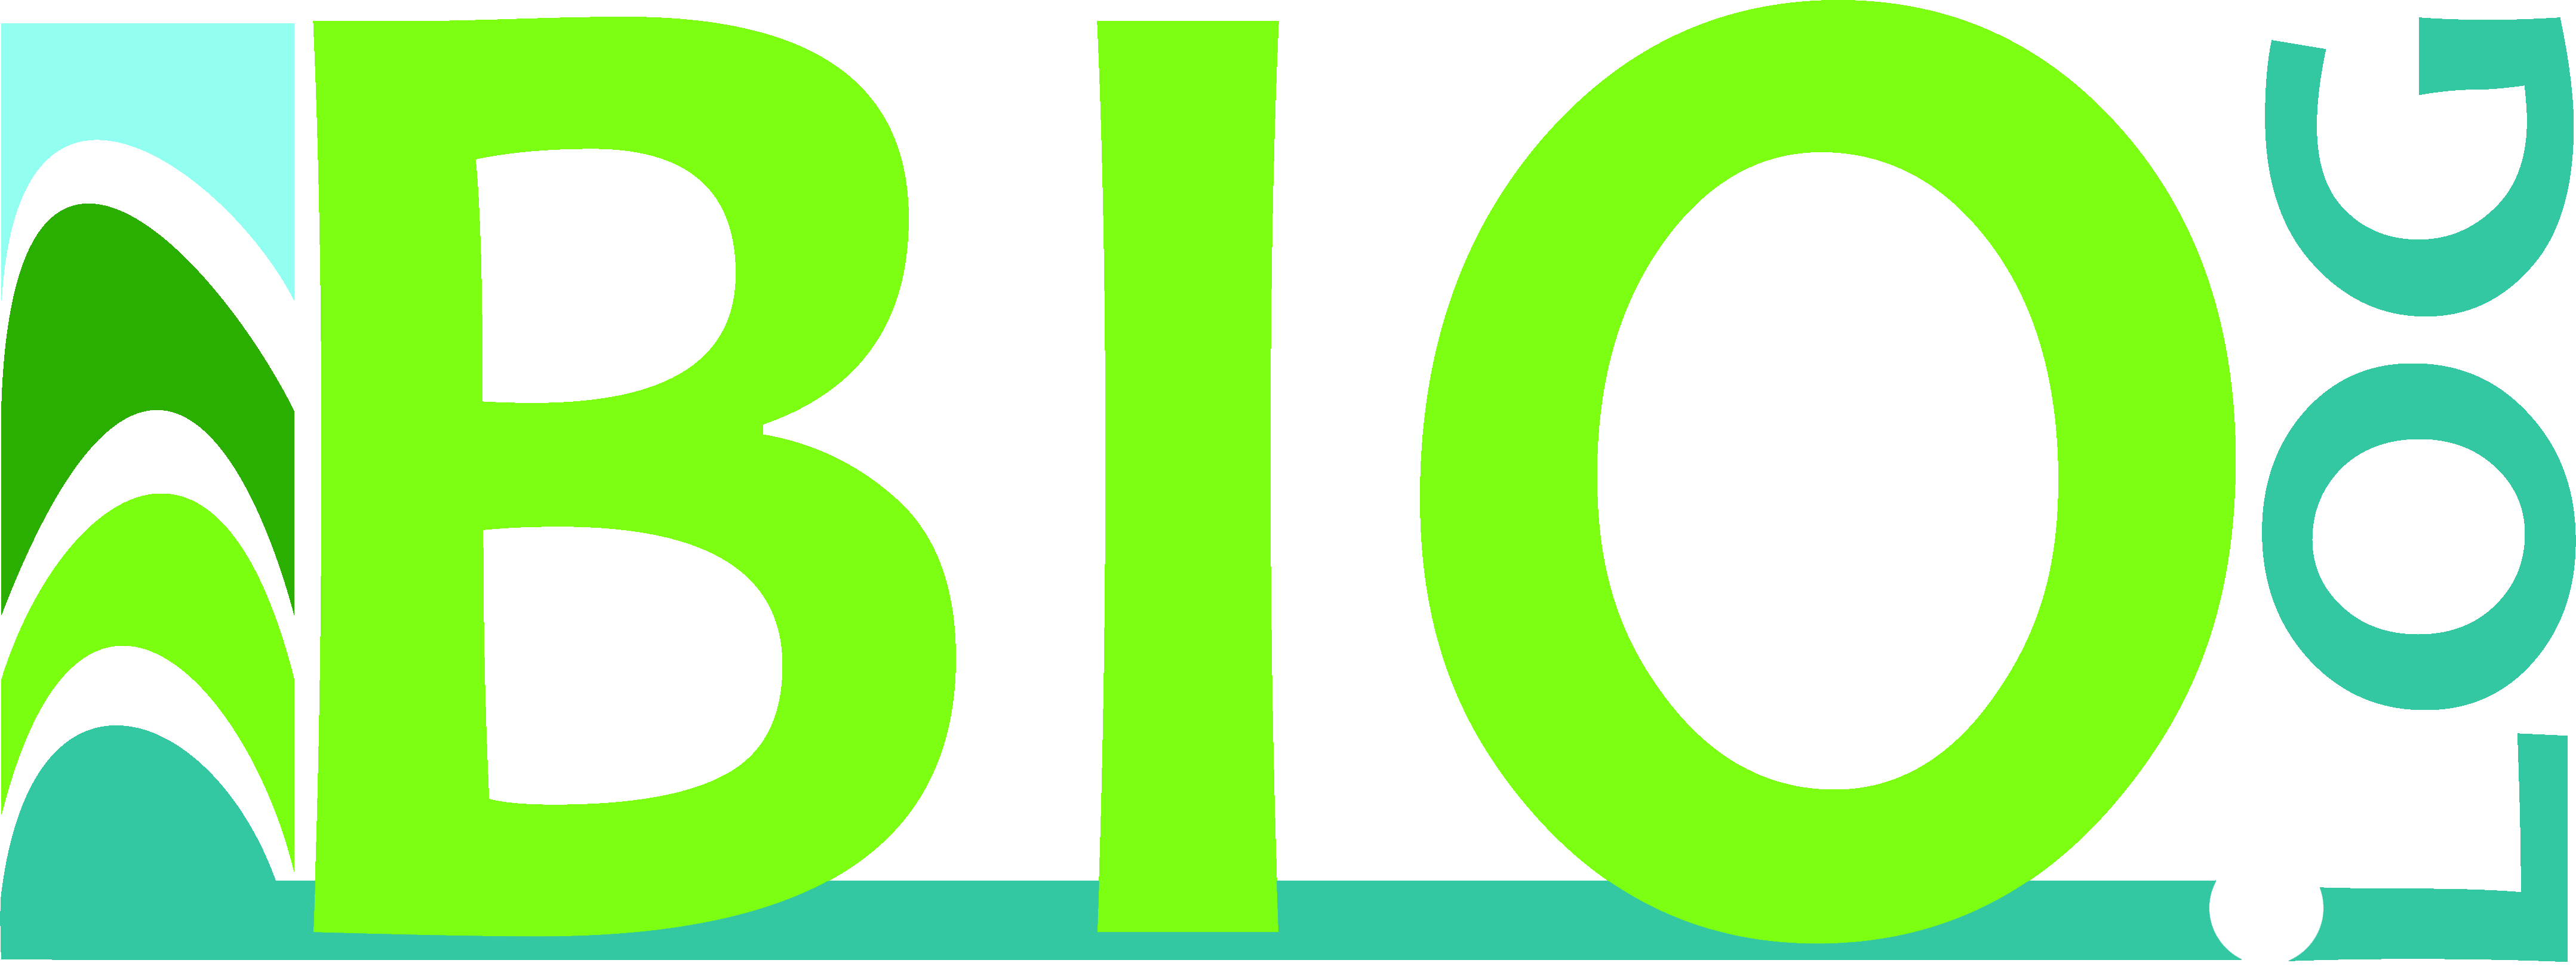 Bio.log (лого)